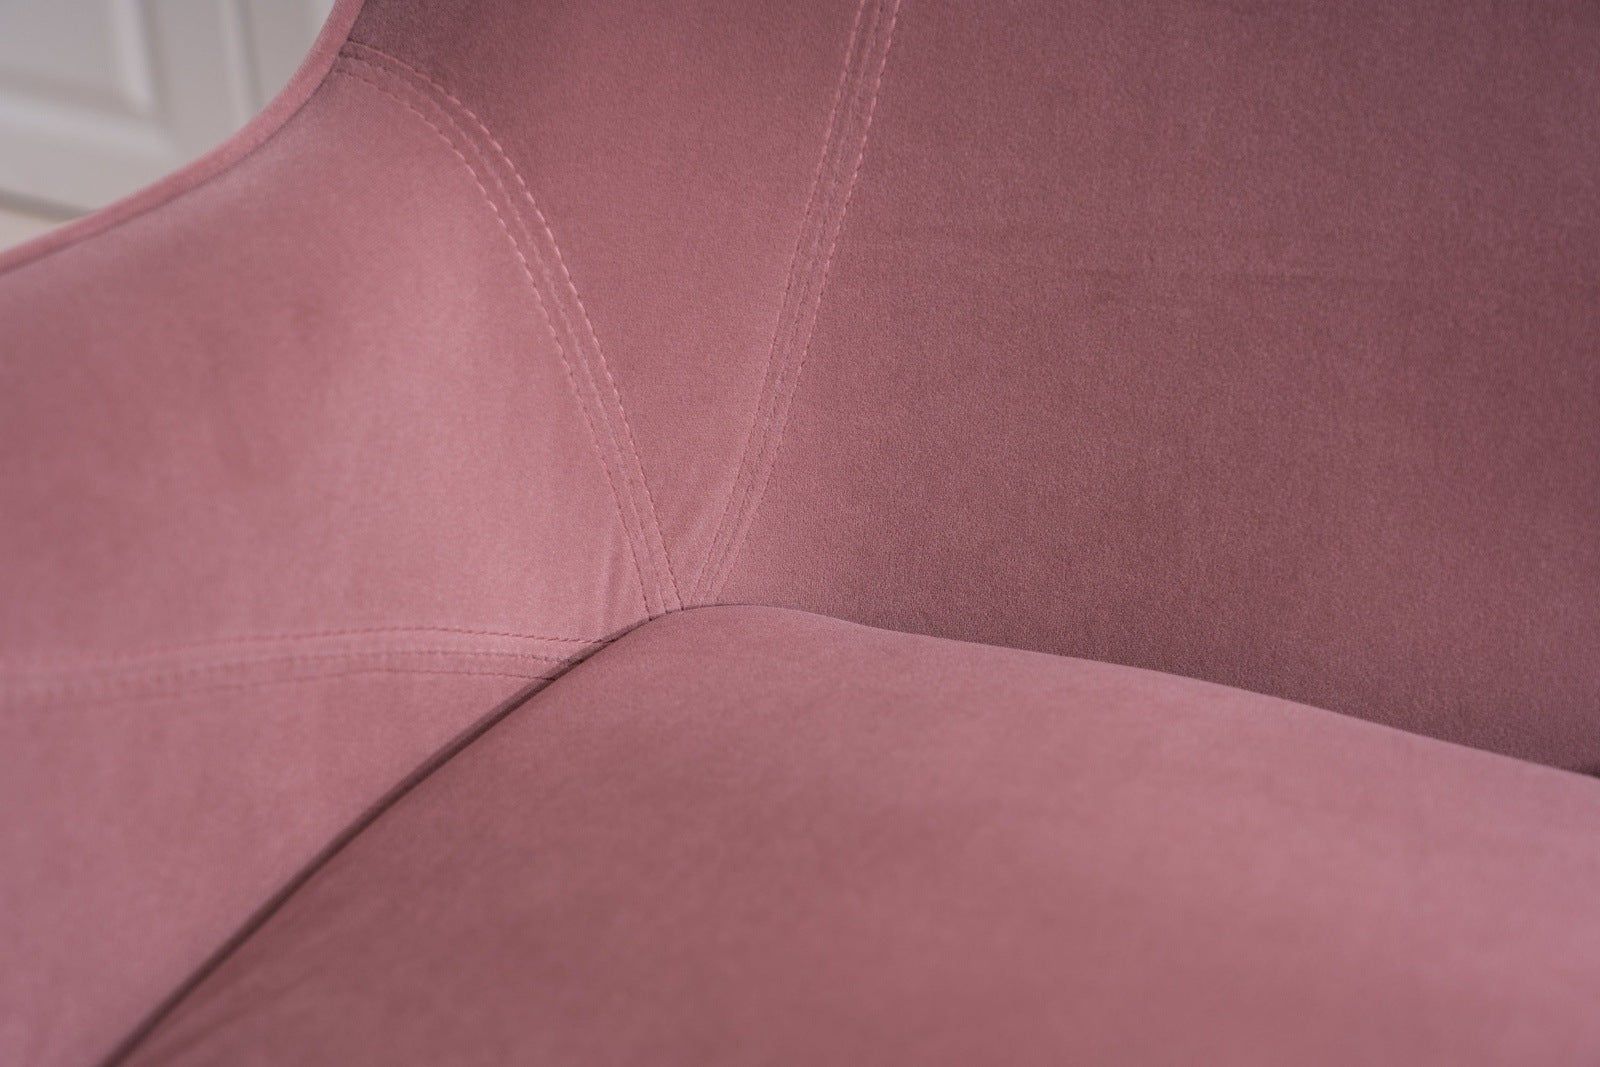 Modern Soft Velvet Material Pink Ergonomics Accent Chair